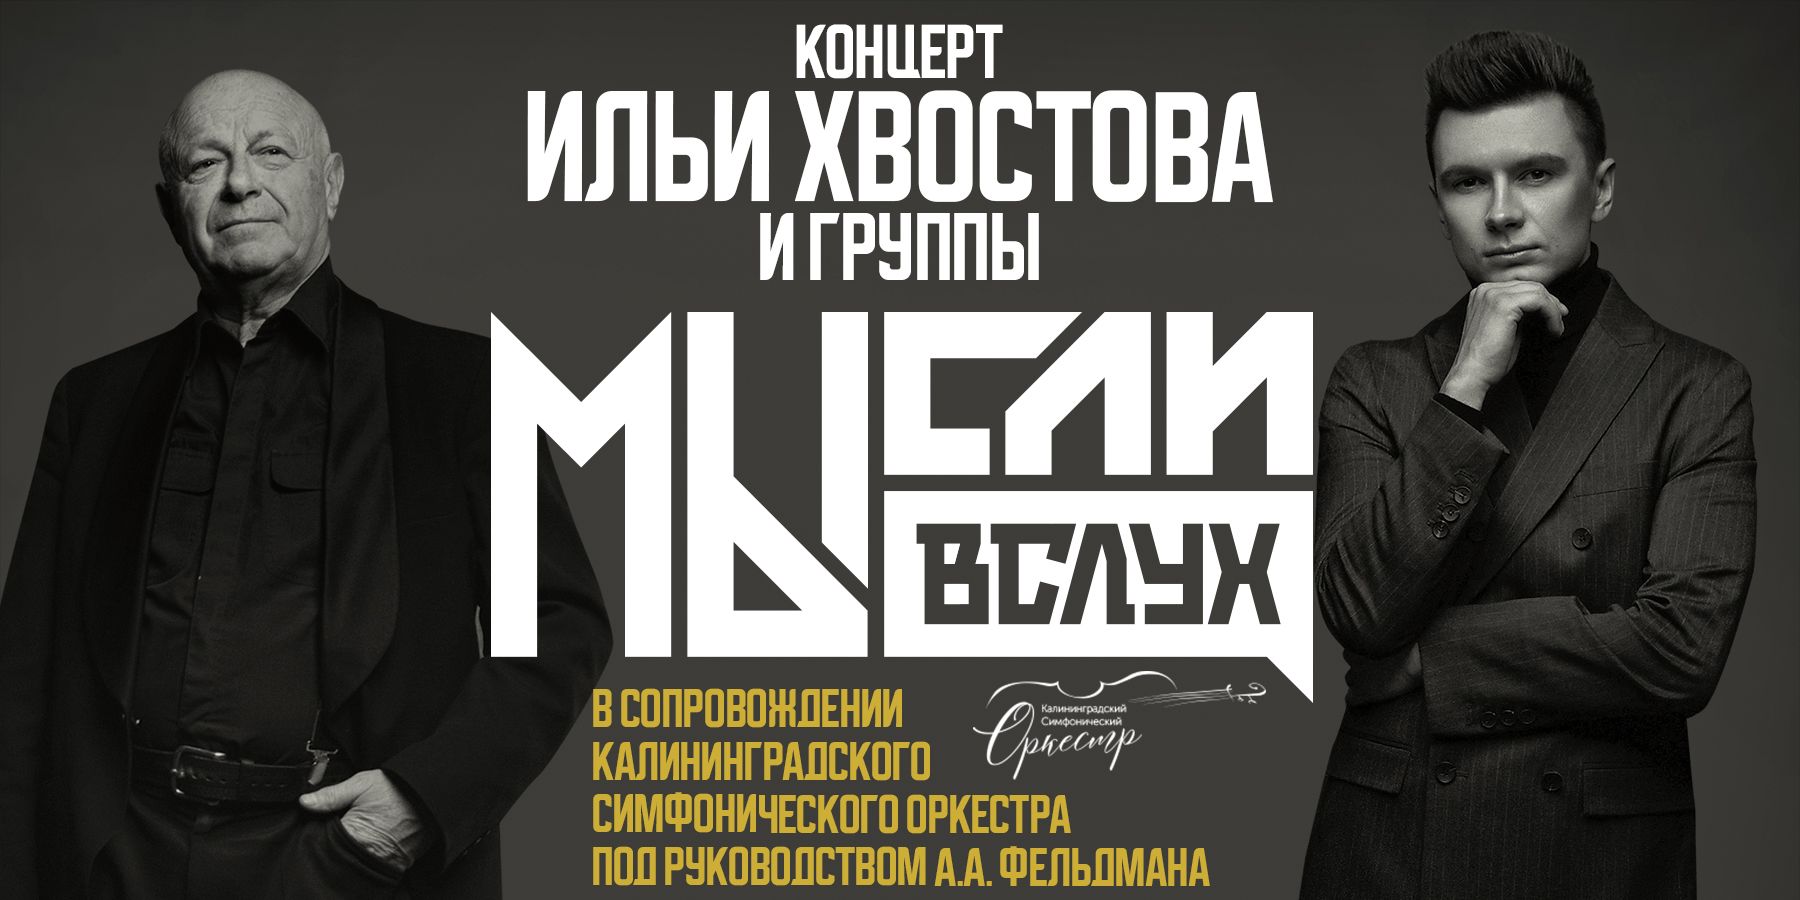 Концерт: Илья Хвостов, Аркадий Фельдман и группа «МЫсли вслух»